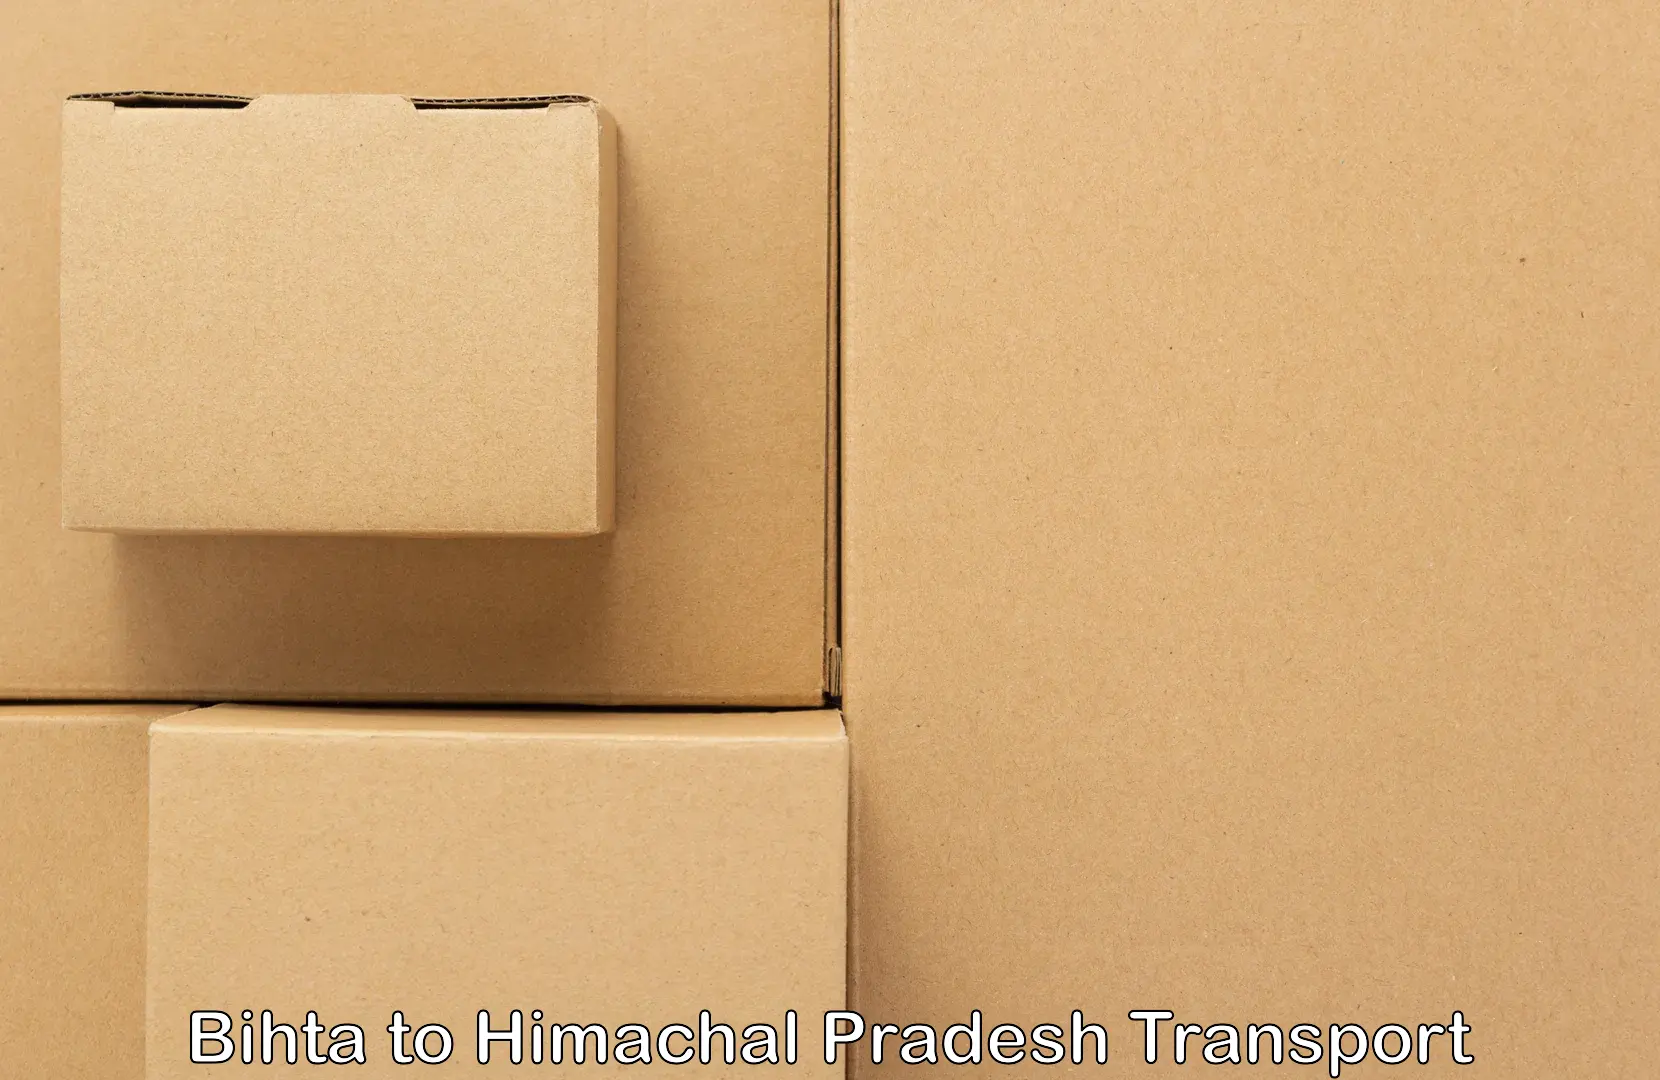 Furniture transport service Bihta to Chintpurni